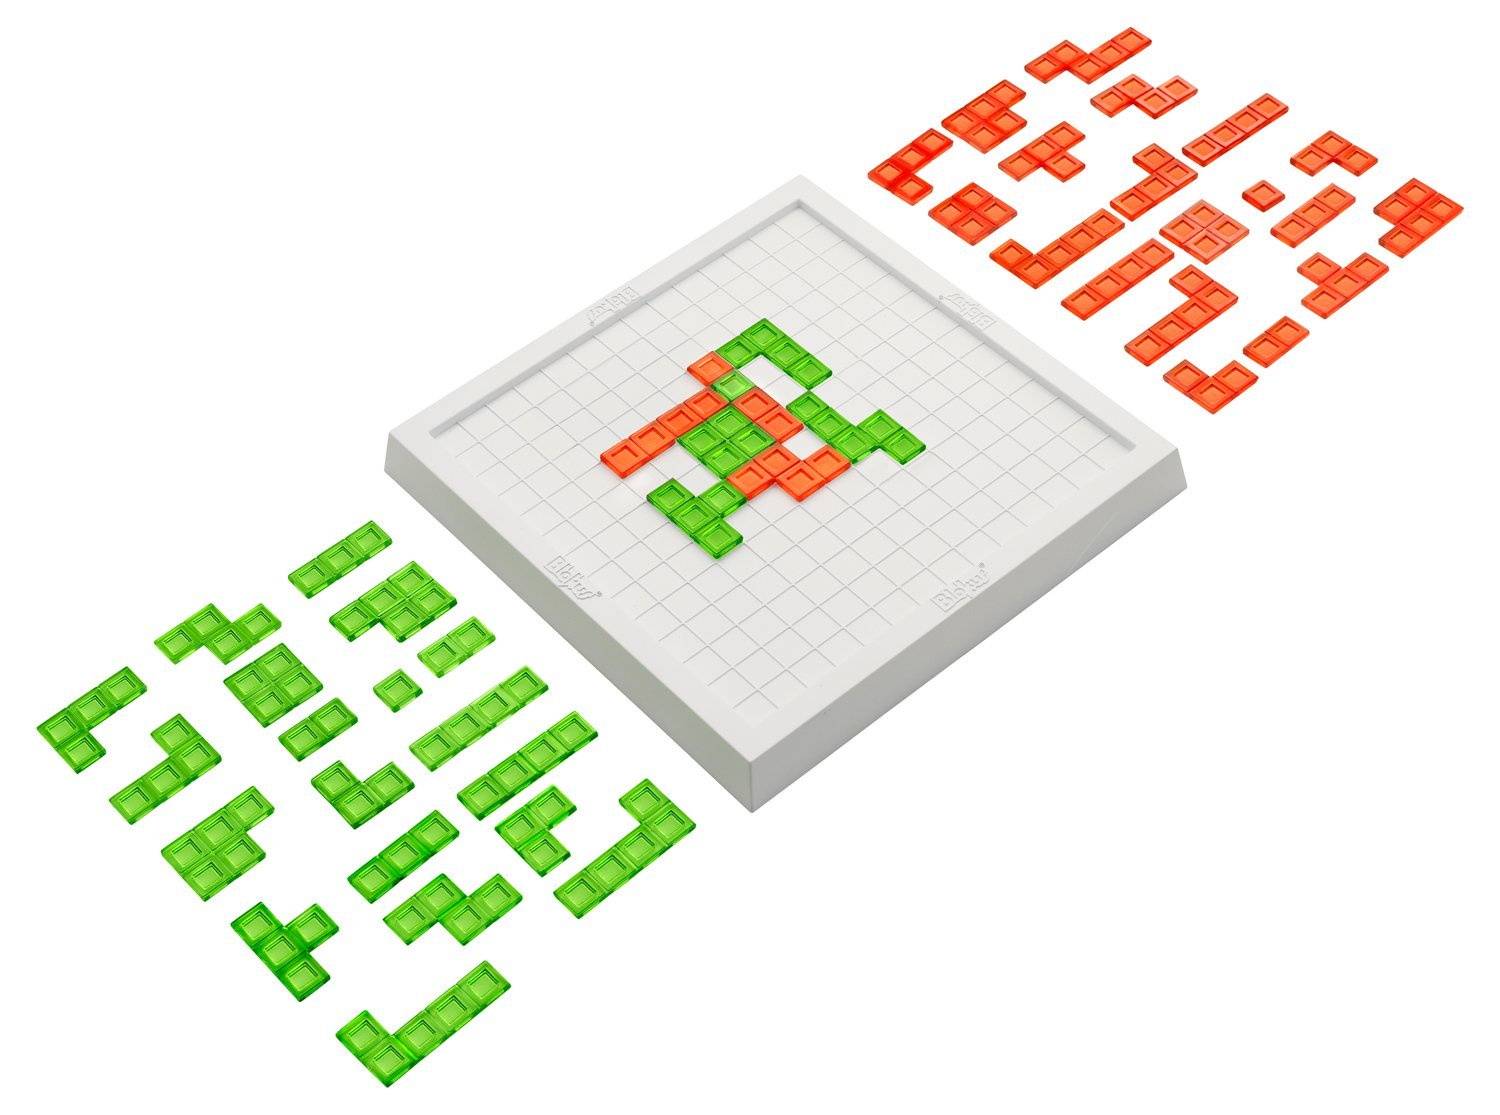 фото Настольная игра BeeZee Toys Стратегическая логическая настольная игра головоломка тетрис, Блокус Джуниор , 48 элементов, 2 игрока Blokus Duo зеленый, оранжевый